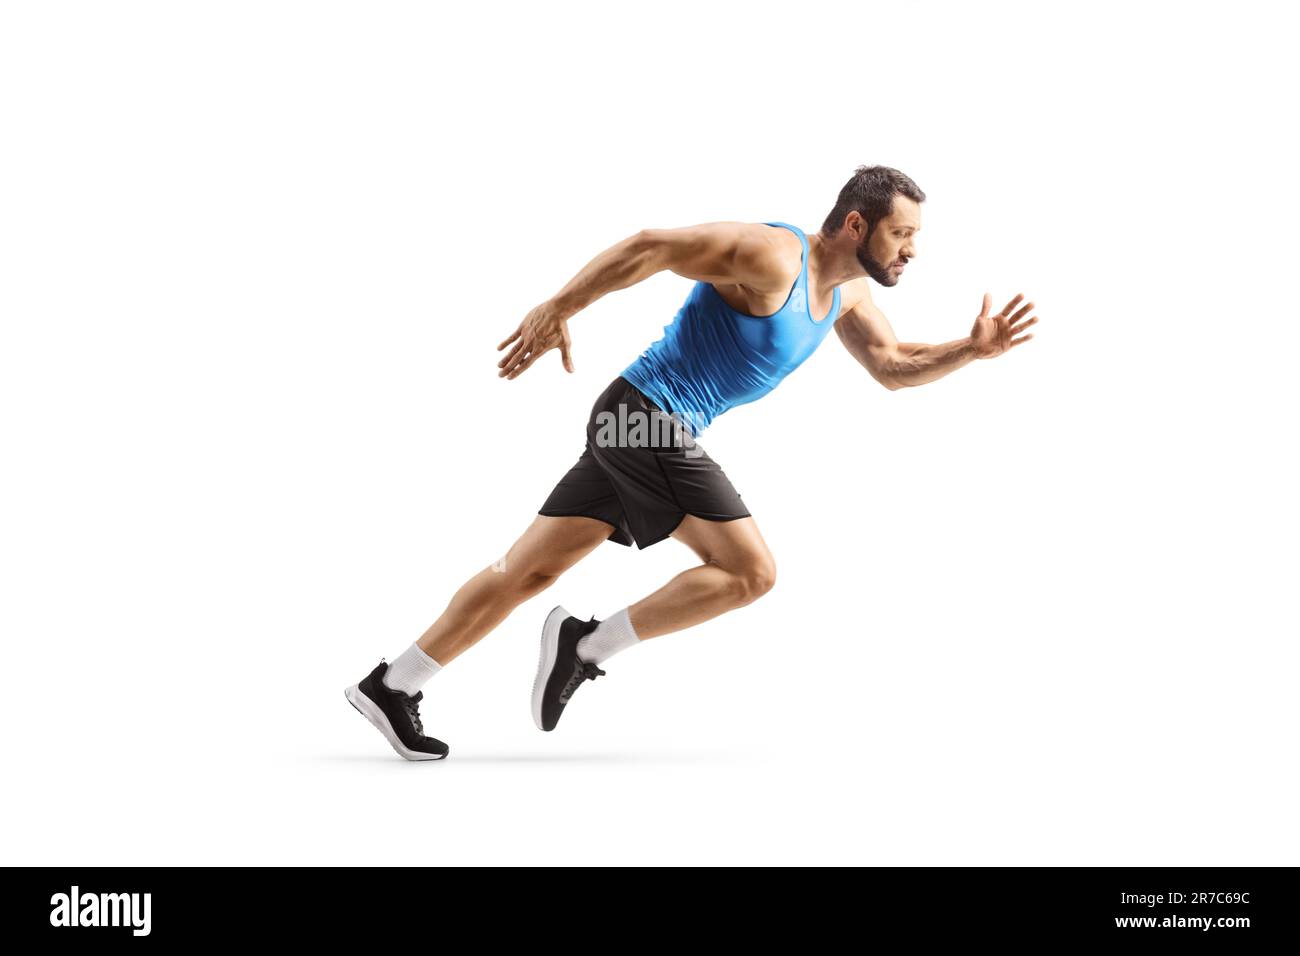 Profilo a tutta lunghezza di un uomo in forma che inizia una corsa isolata su sfondo bianco Foto Stock